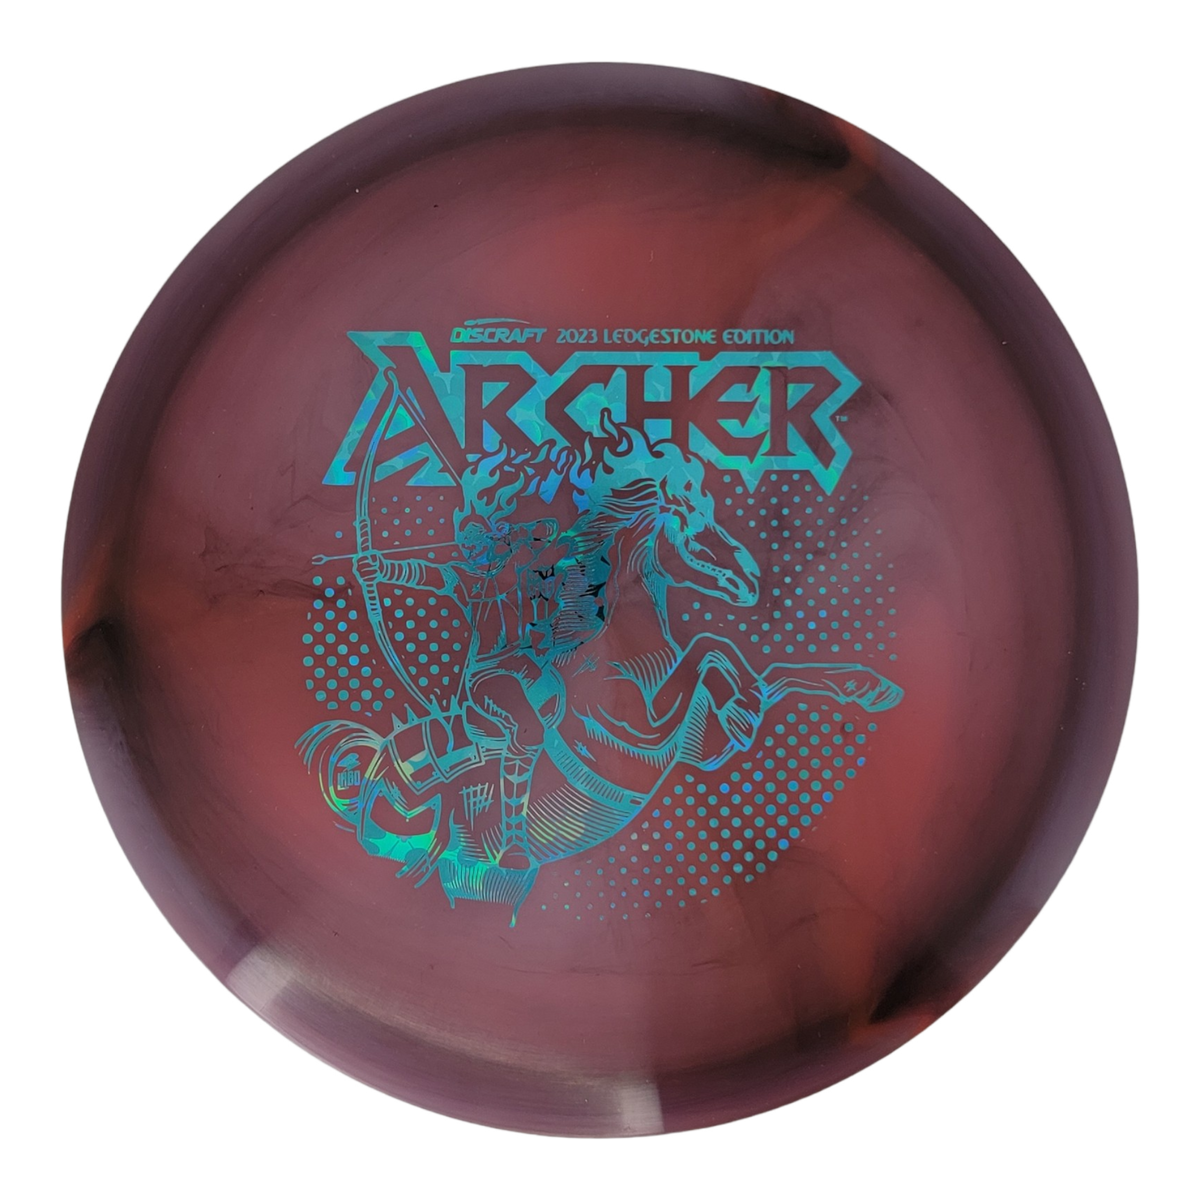 Discraft Z Swirl Archer - Ledgestone 2 (2023)